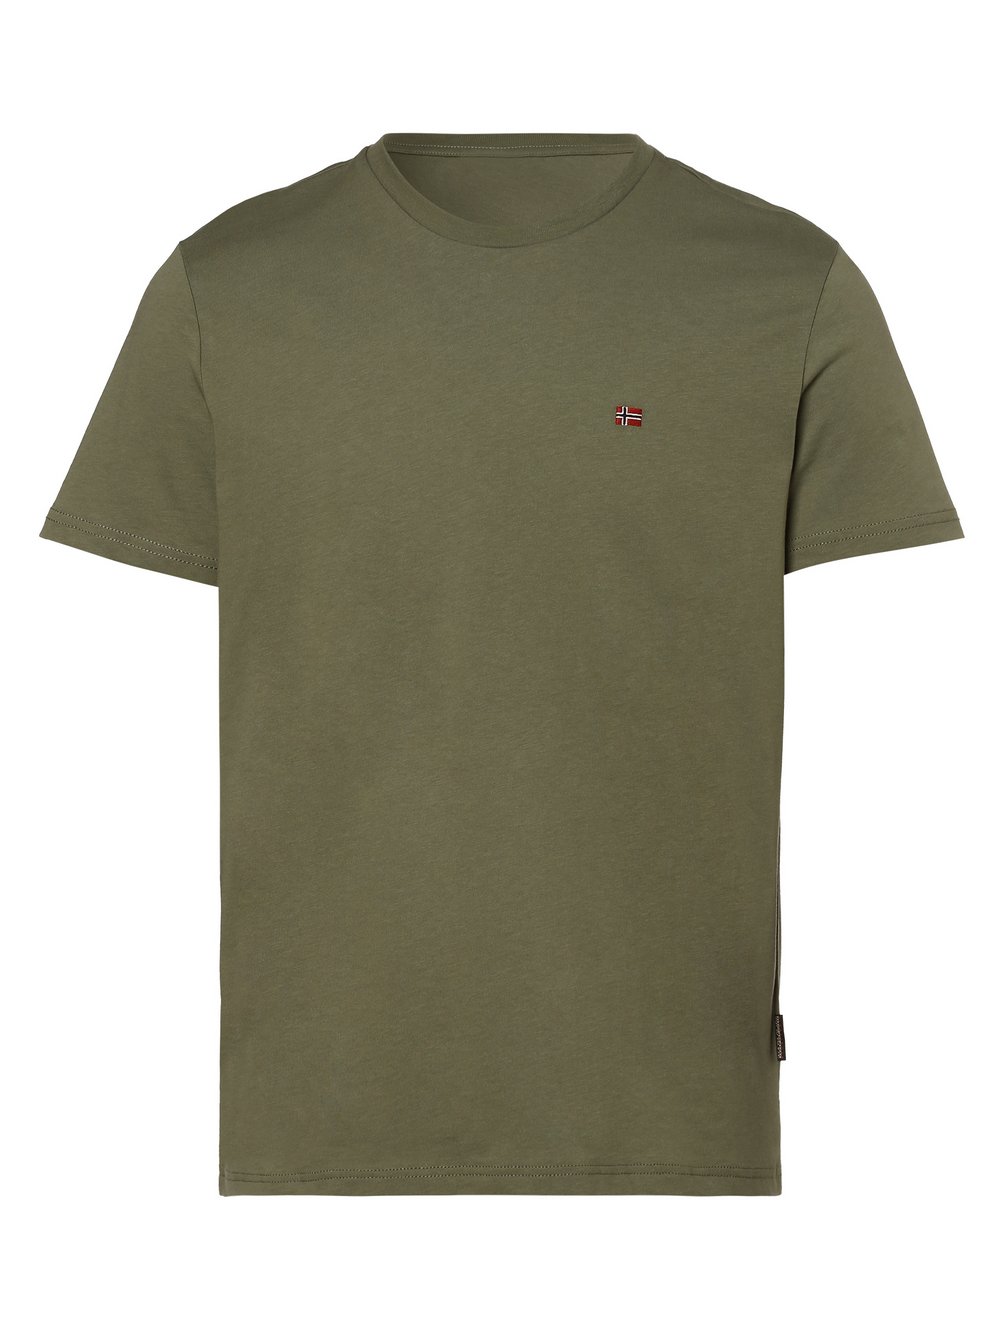 Napapijri - T-shirt męski – Salis, zielony